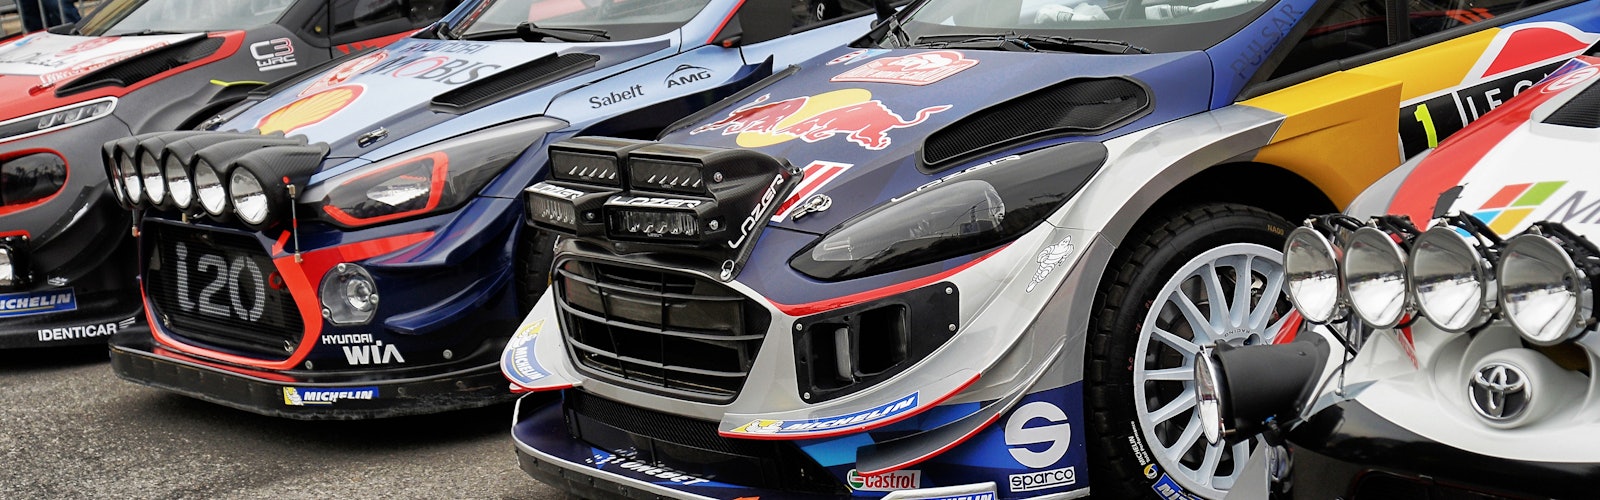 FIA WORLD RALLY CHAMPIONSHIP 2017 – WRC MONTE CARLO